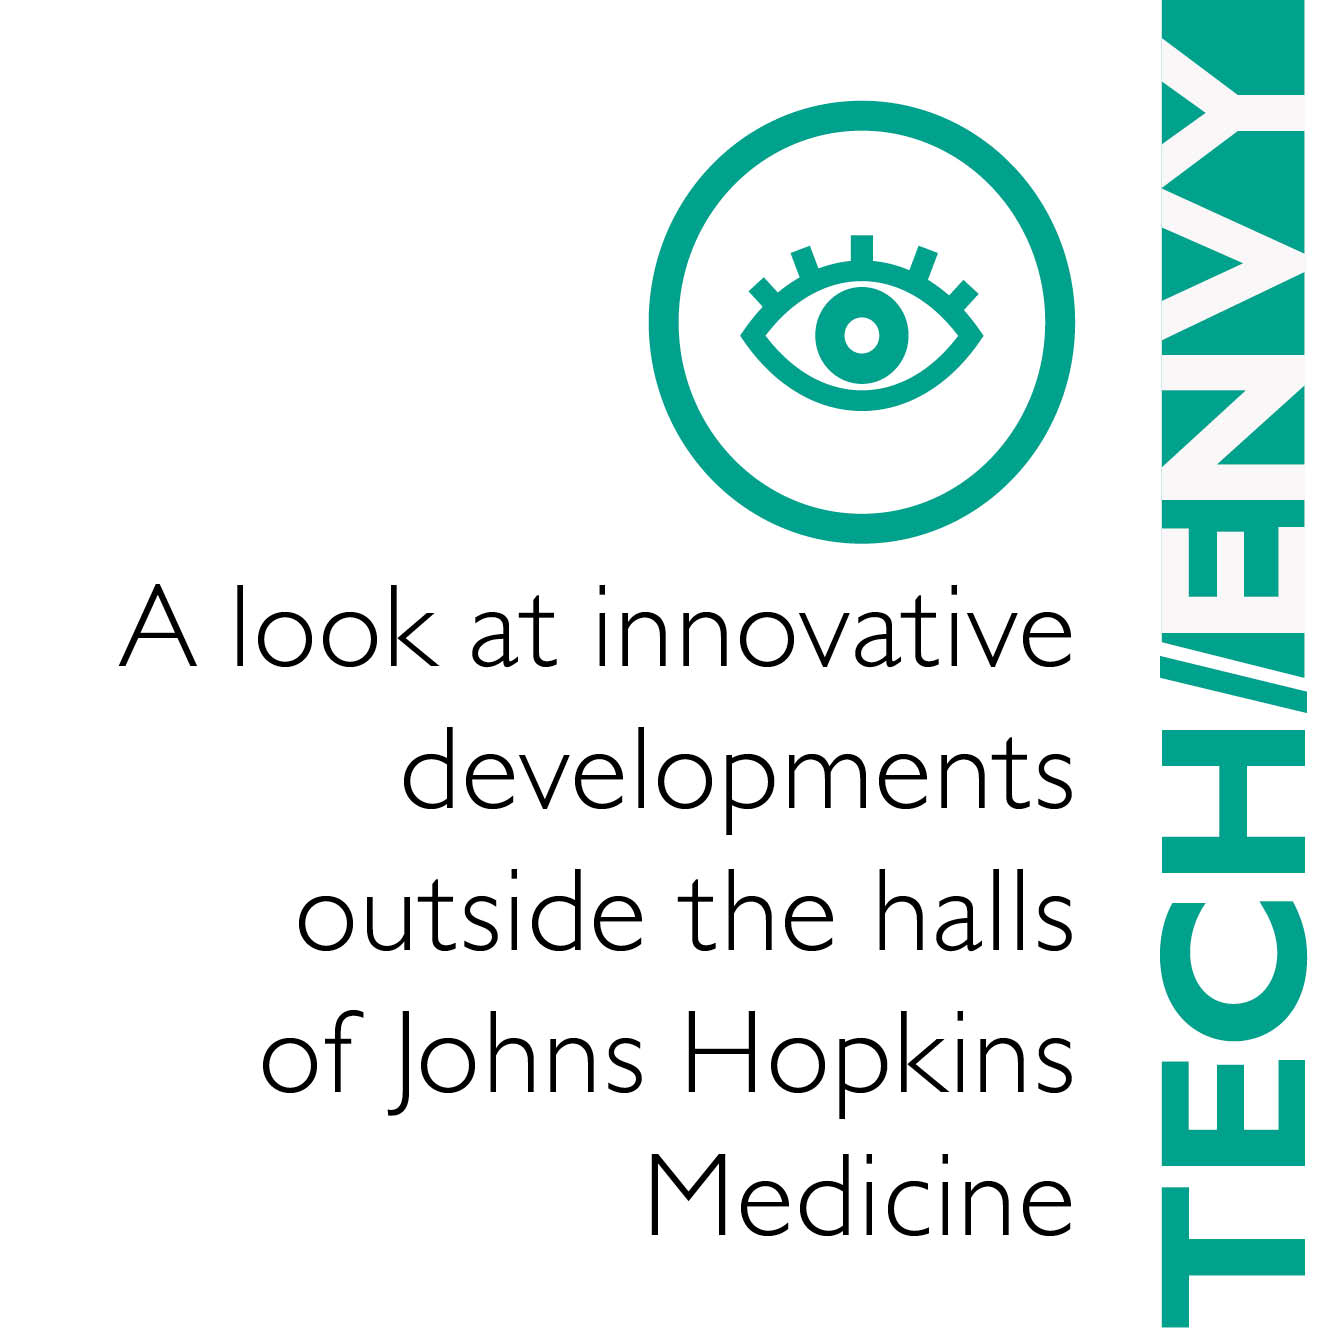 medication-innovations-johns-hopkins-medicine